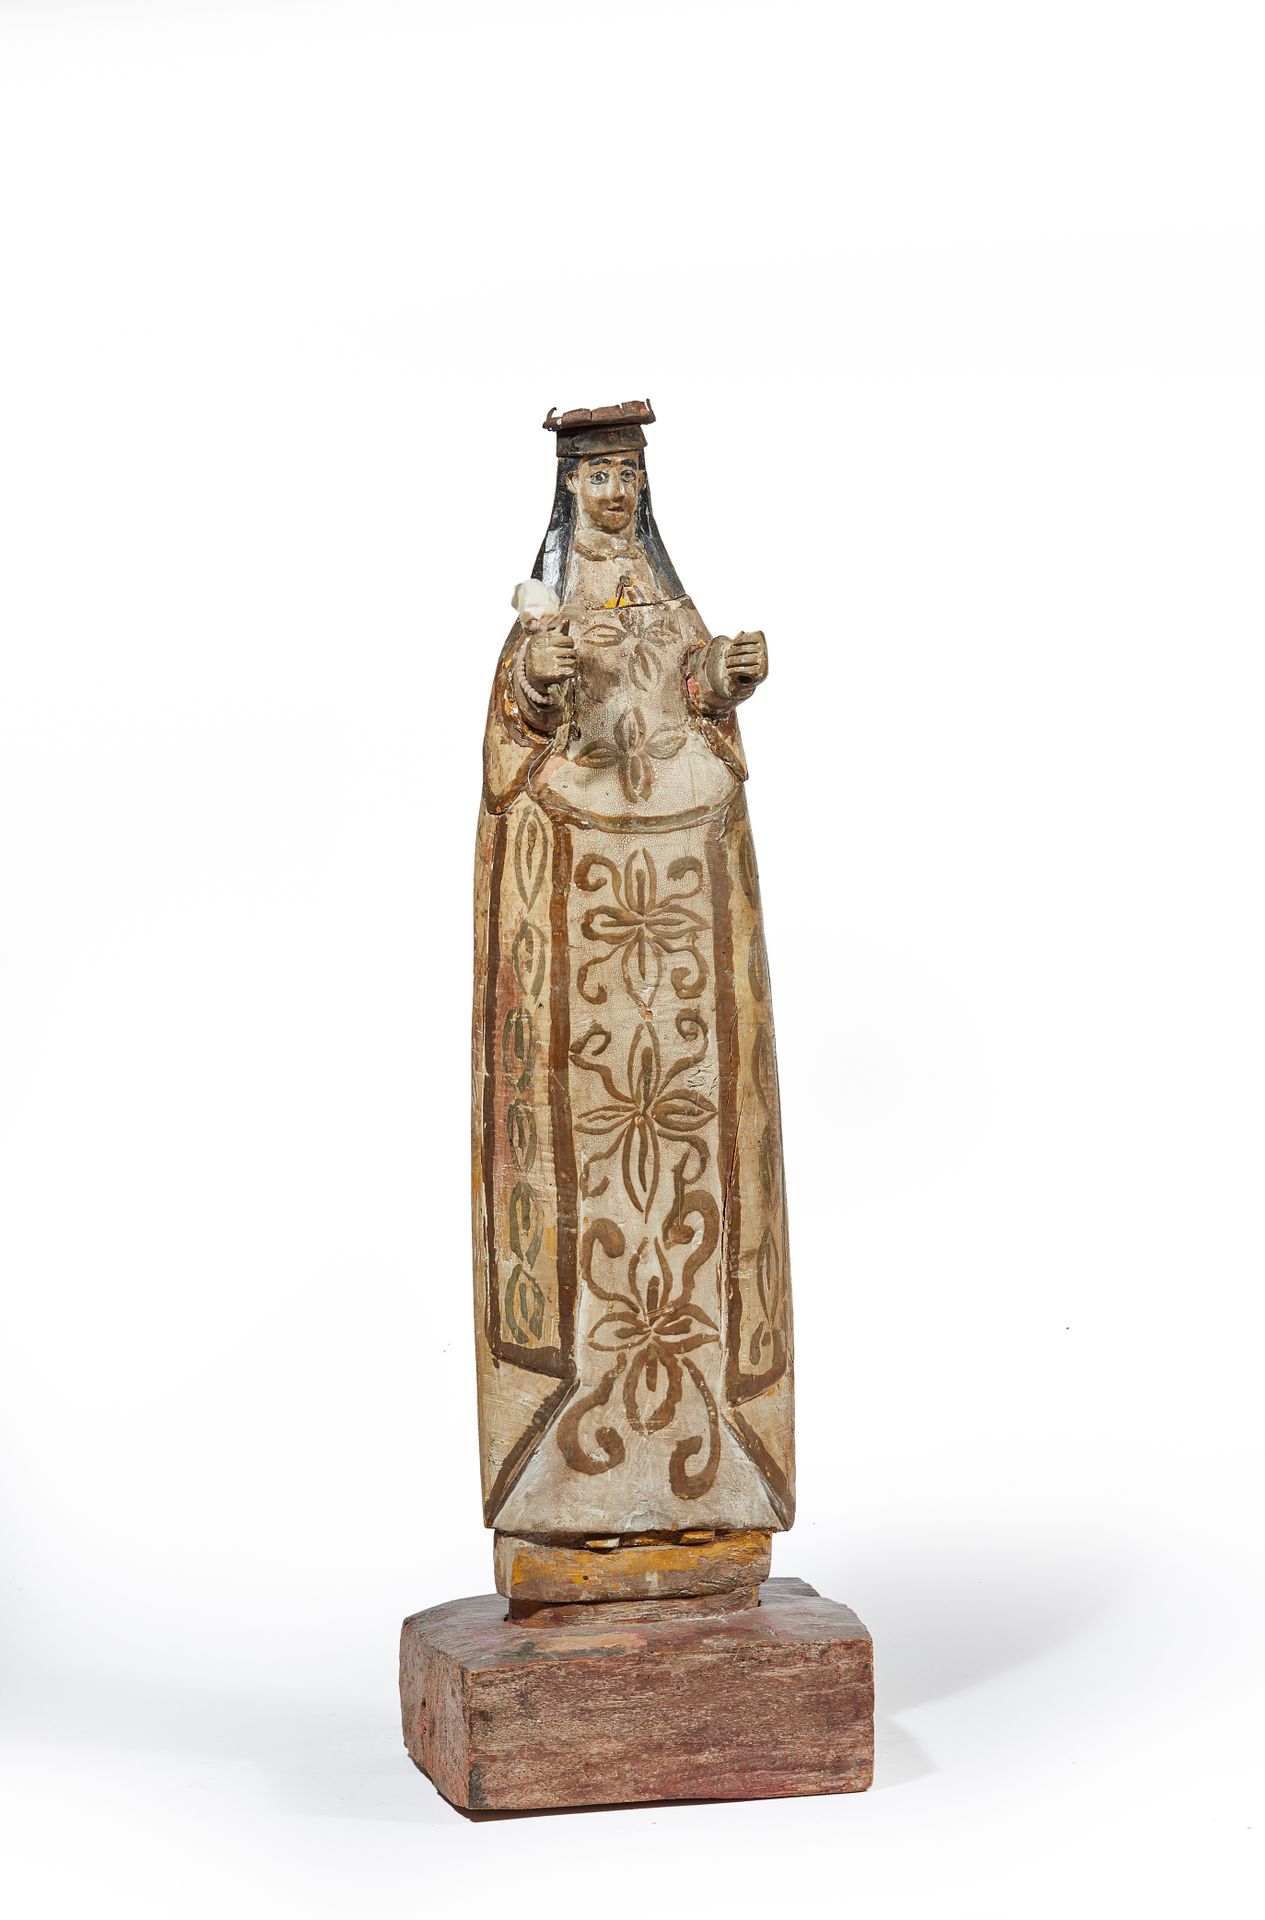 Null 一个多色和金雕的木制雕像，是一个线状皇冠的女圣人（匈牙利的伊丽莎白？），她的右手拿着一朵布玫瑰。

金色，右手拿着一朵织物玫瑰。

伊比利亚盆地--1&hellip;